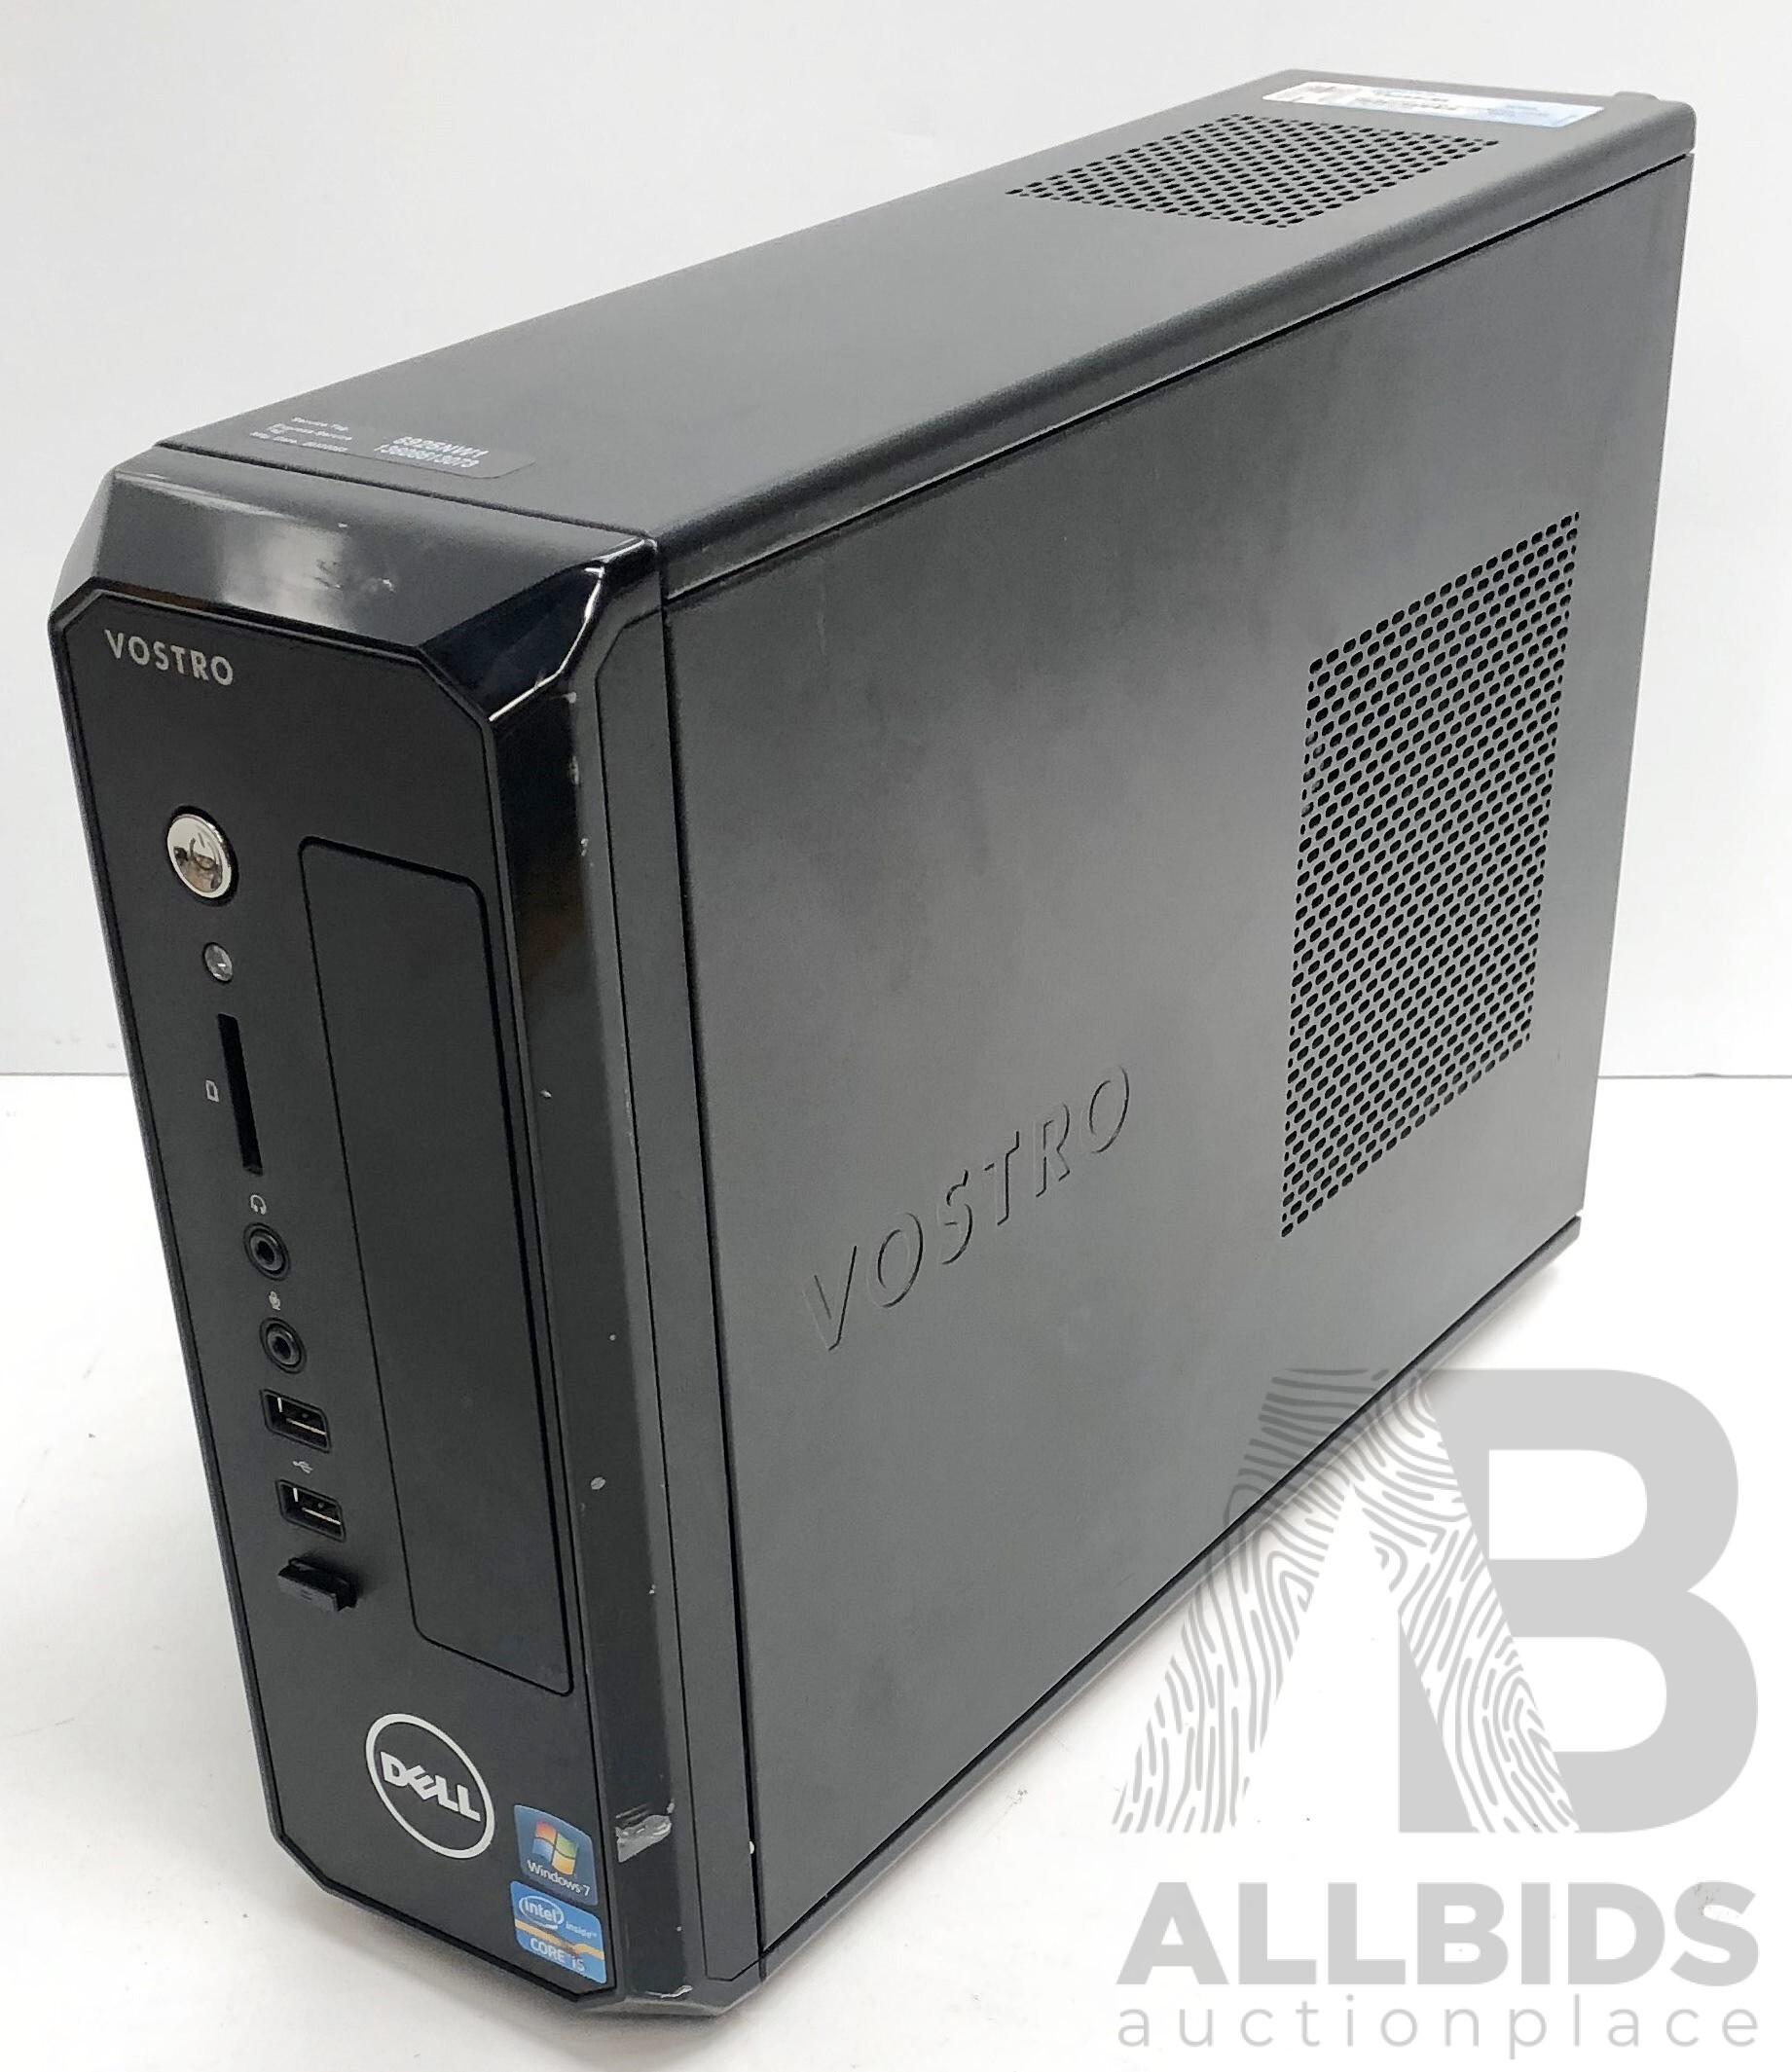 新品DELL VOSTRO D06S Core i5-3470S メモリ 4GB - パソコン